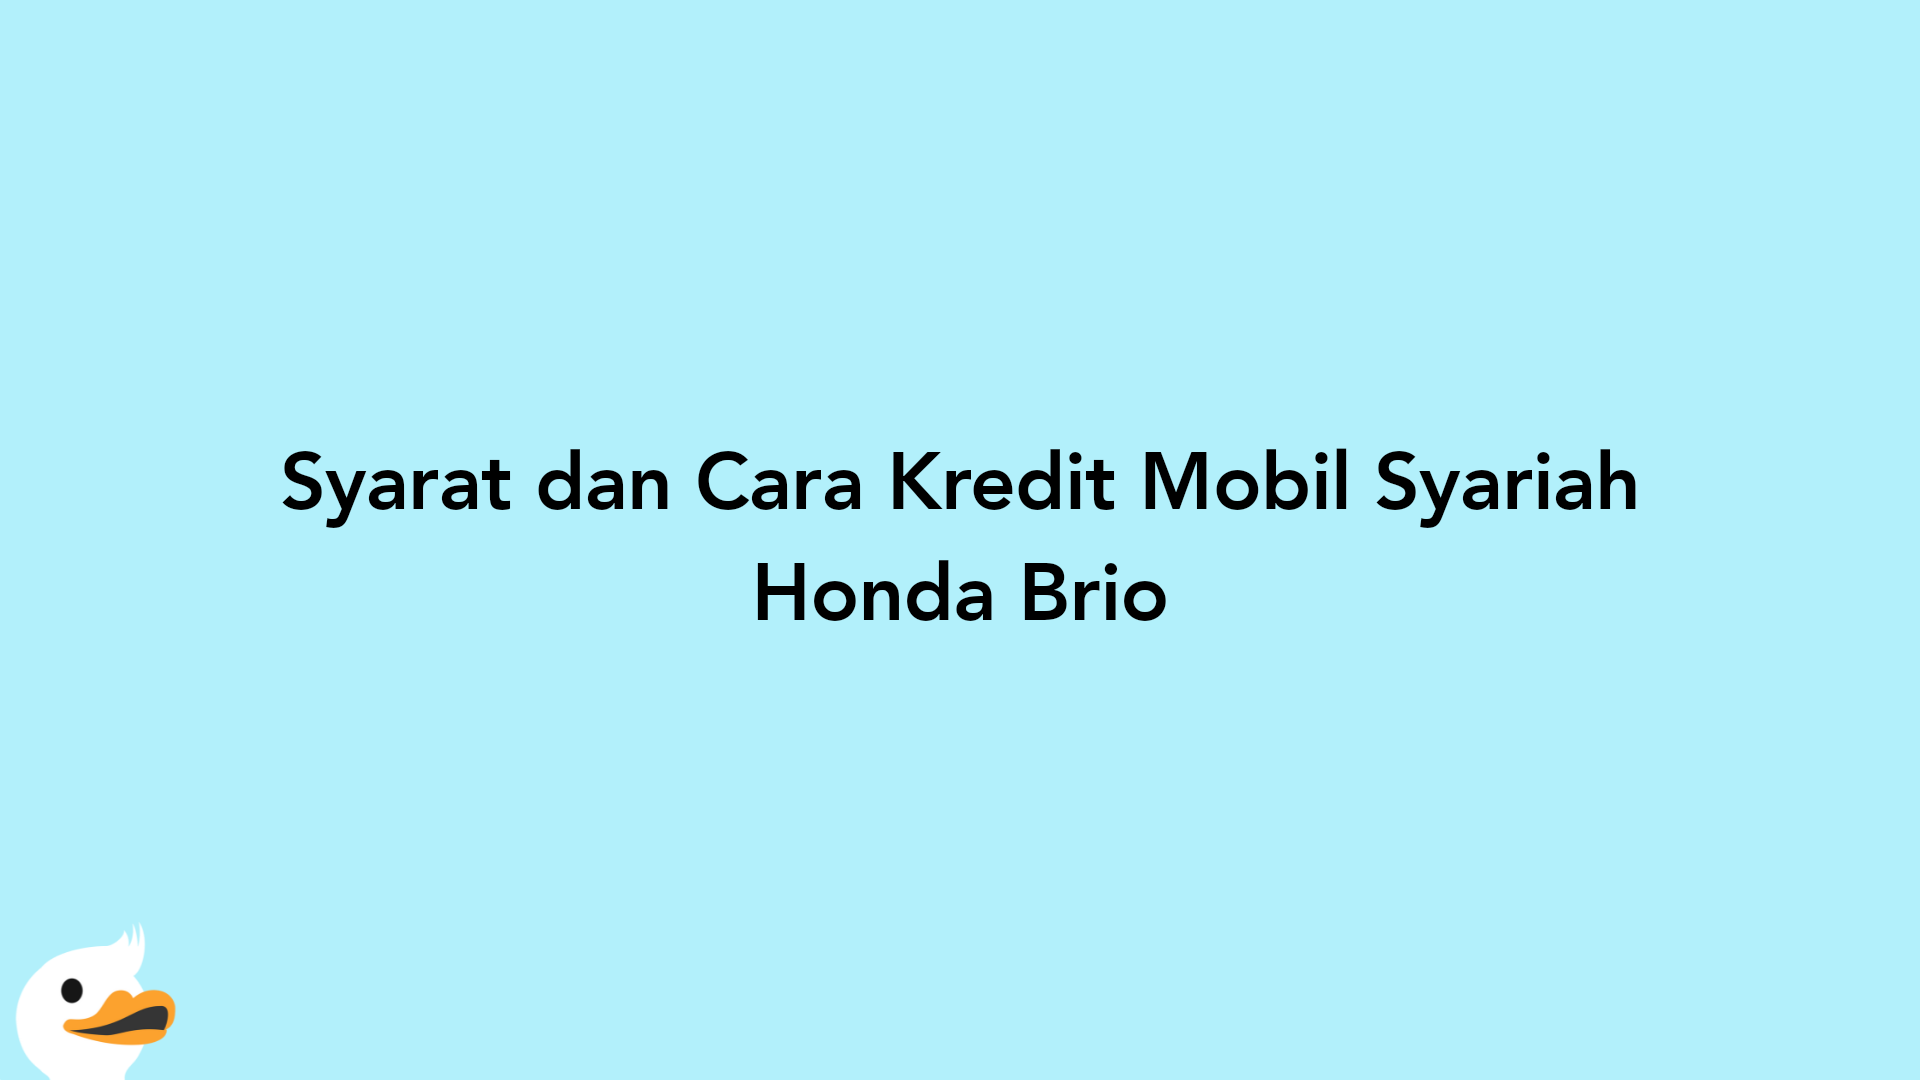 Syarat dan Cara Kredit Mobil Syariah Honda Brio